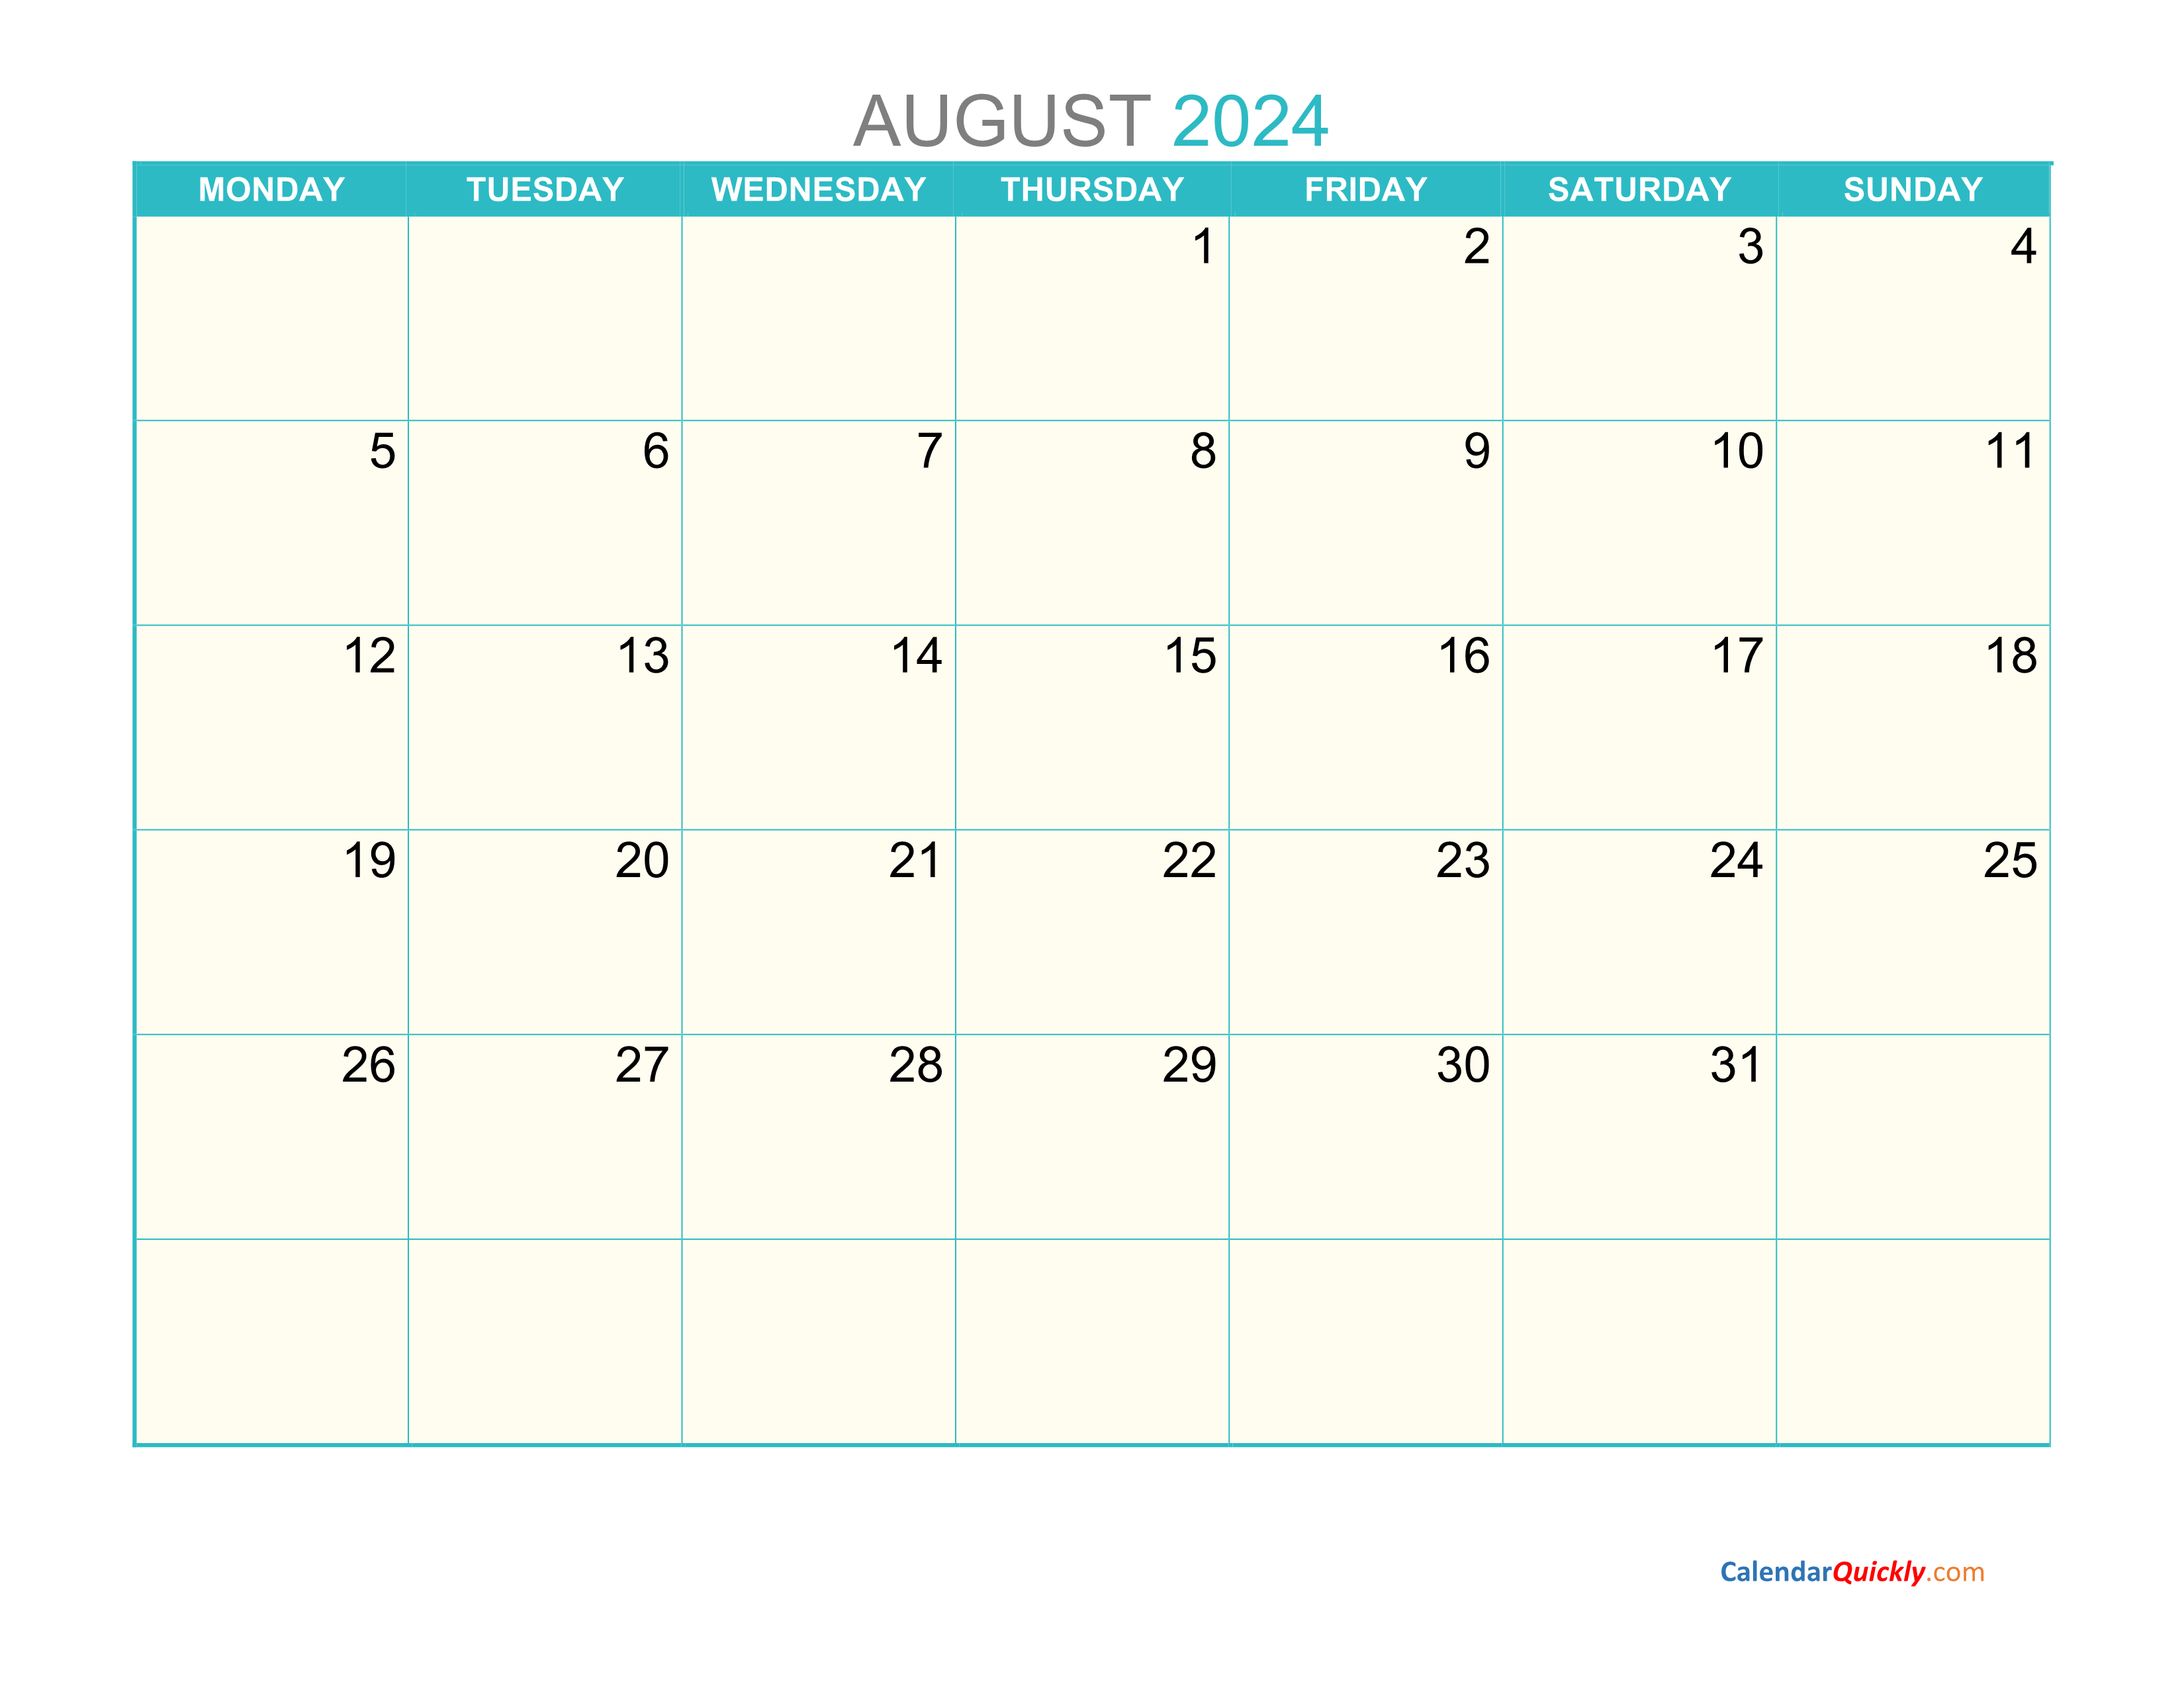 August Monday 2024 Calendar Printable Calendar Quickly